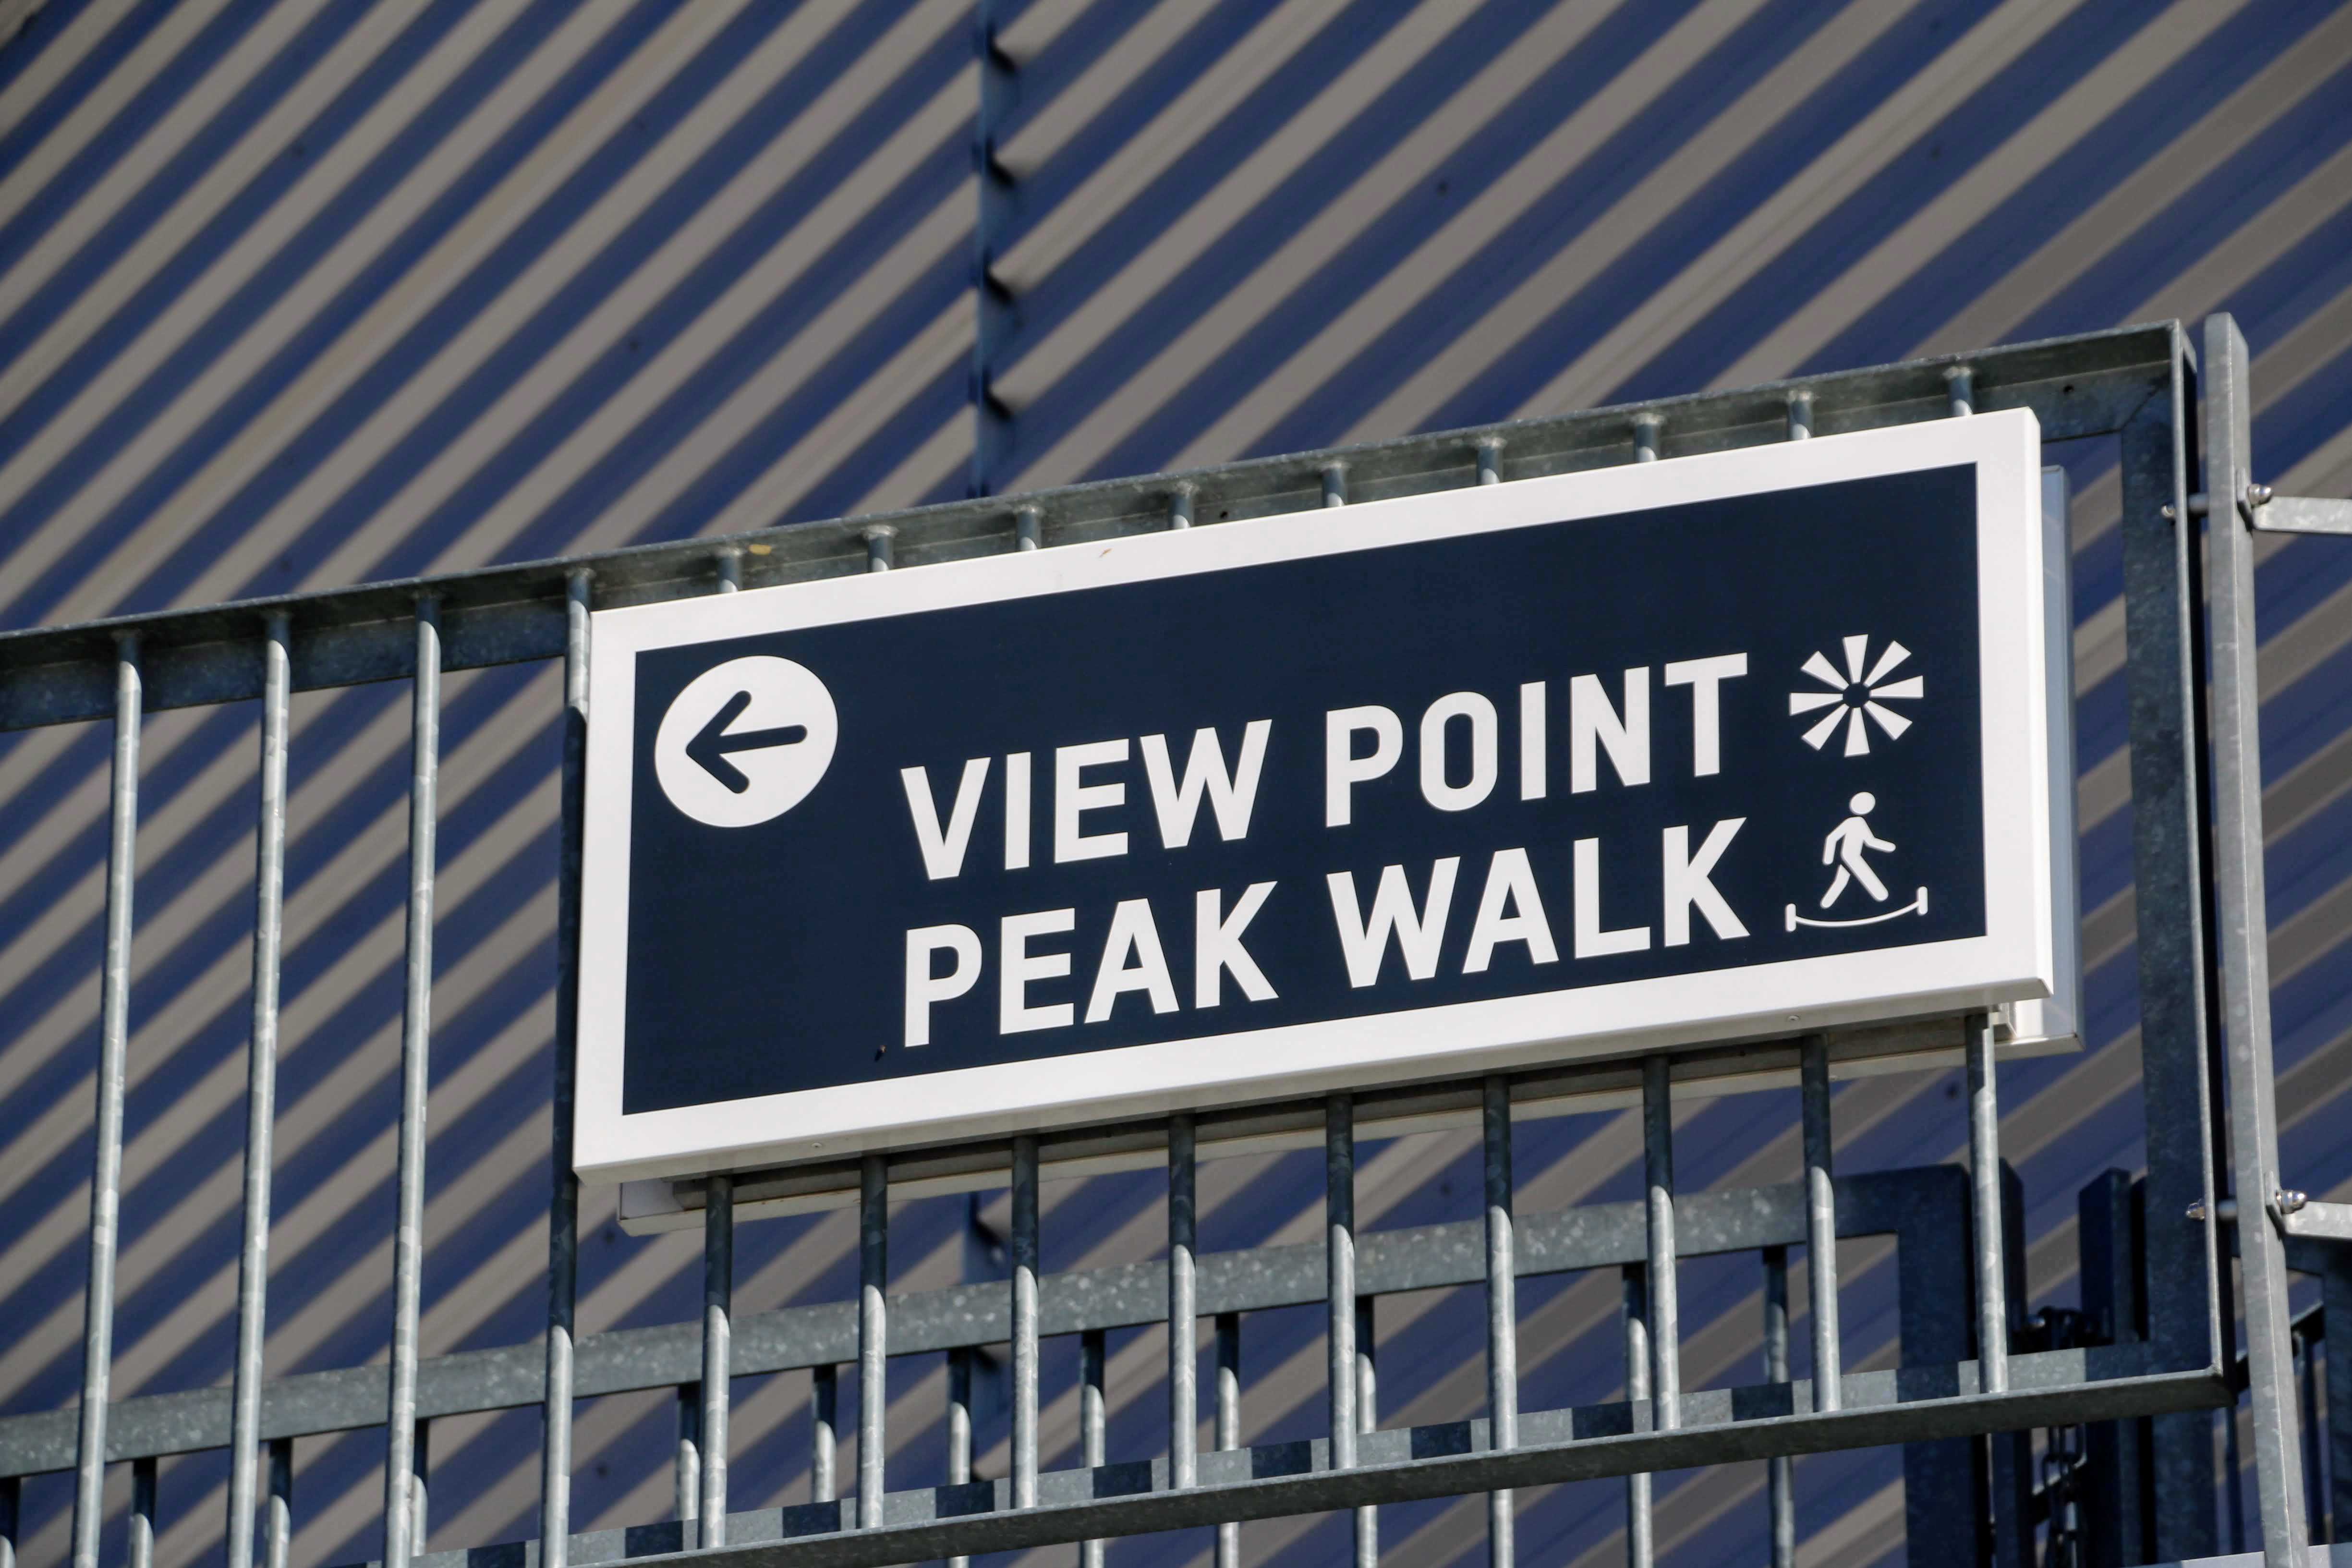 View Point Peak Walk